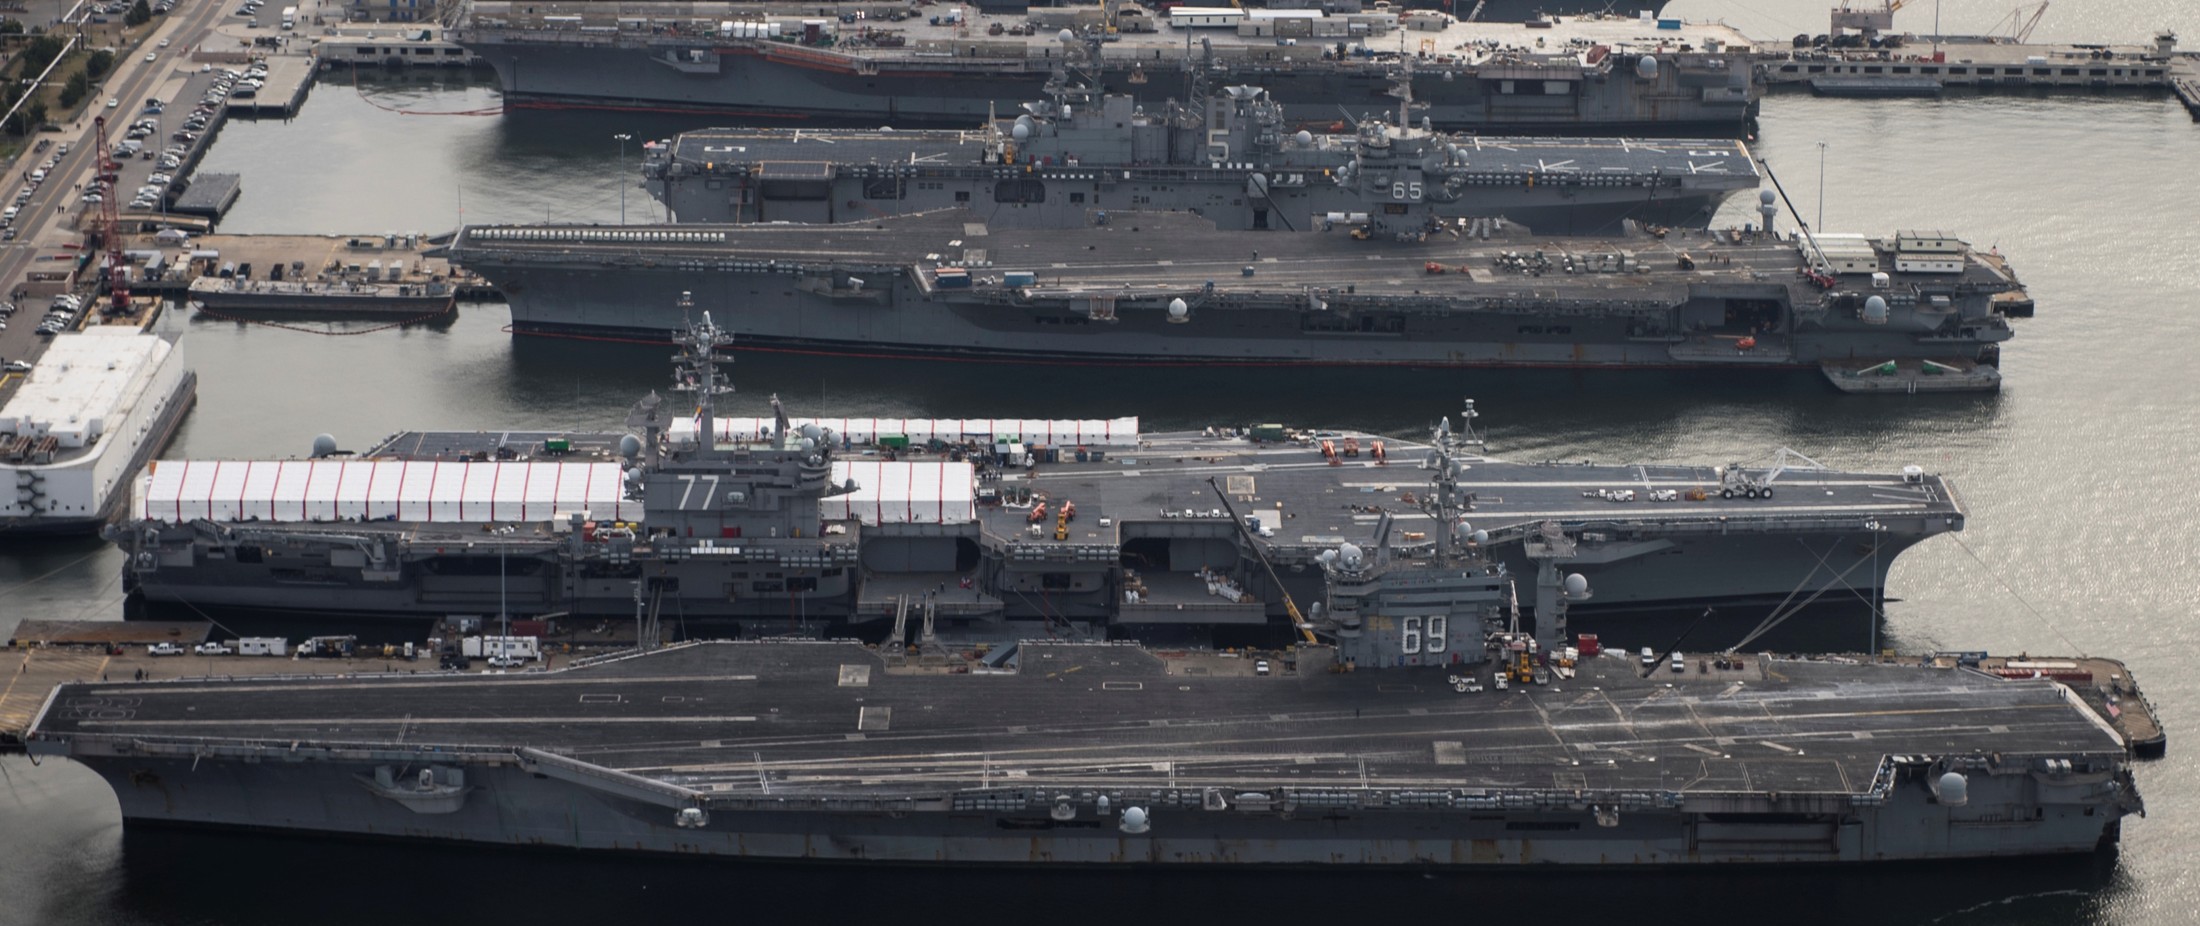 uss dwight d. eisenhower cvn-69 aircraft carrier us navy 2012 102 norfolk virginia